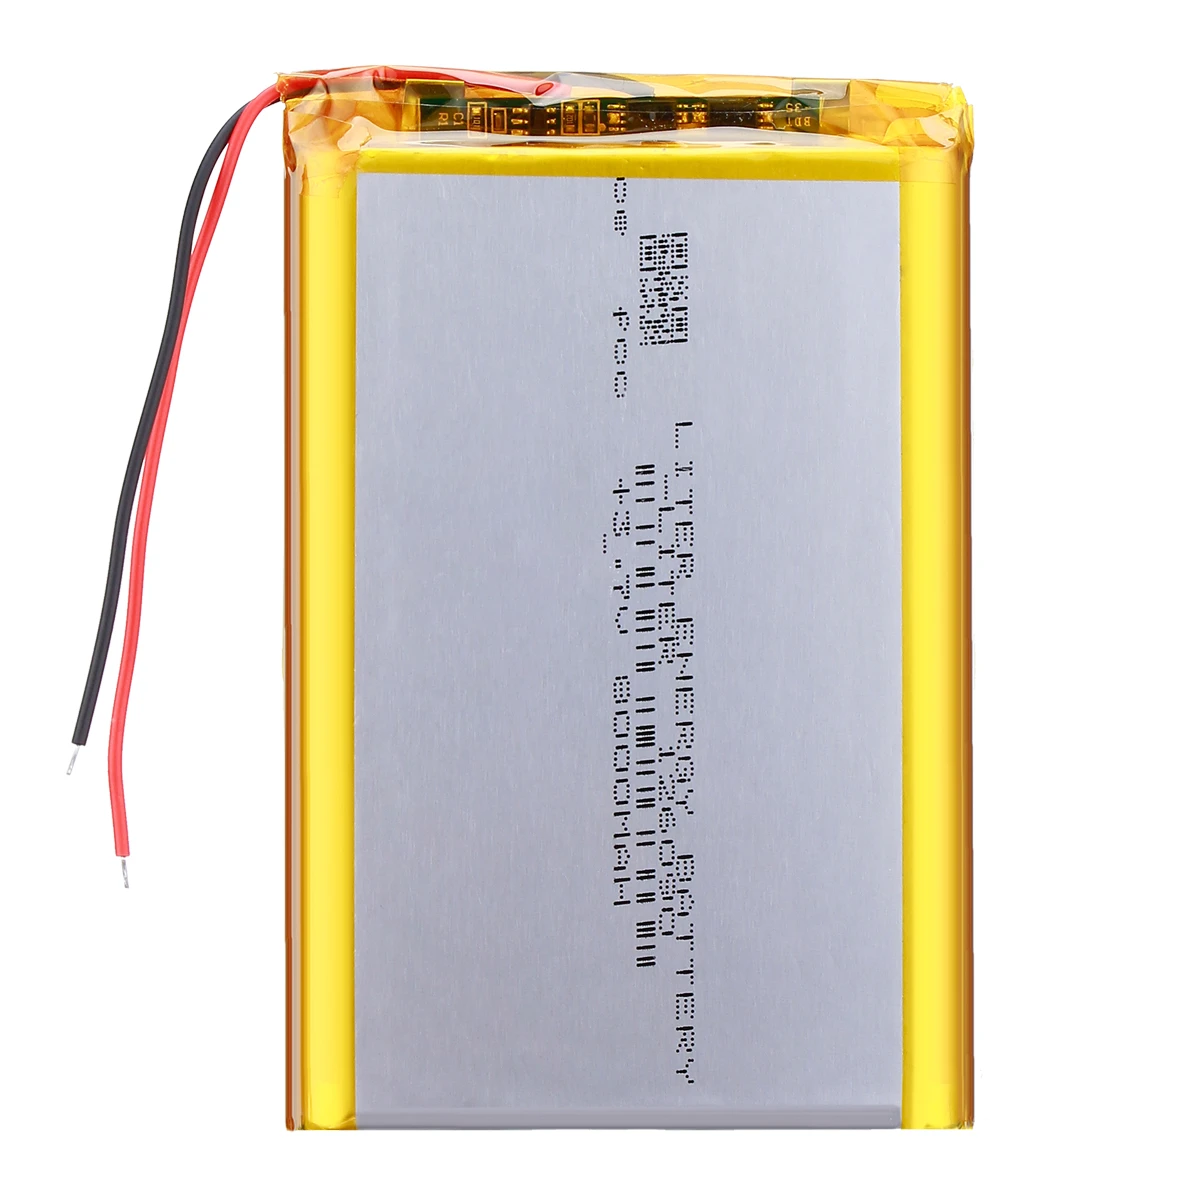 Verscherpen Vervagen lezing 126090 3.7v 8000mah Lithium Polymer Battery 116090 Diy Mobile Emergency  Power Charging Treasure Battery - Digital Batteries - AliExpress